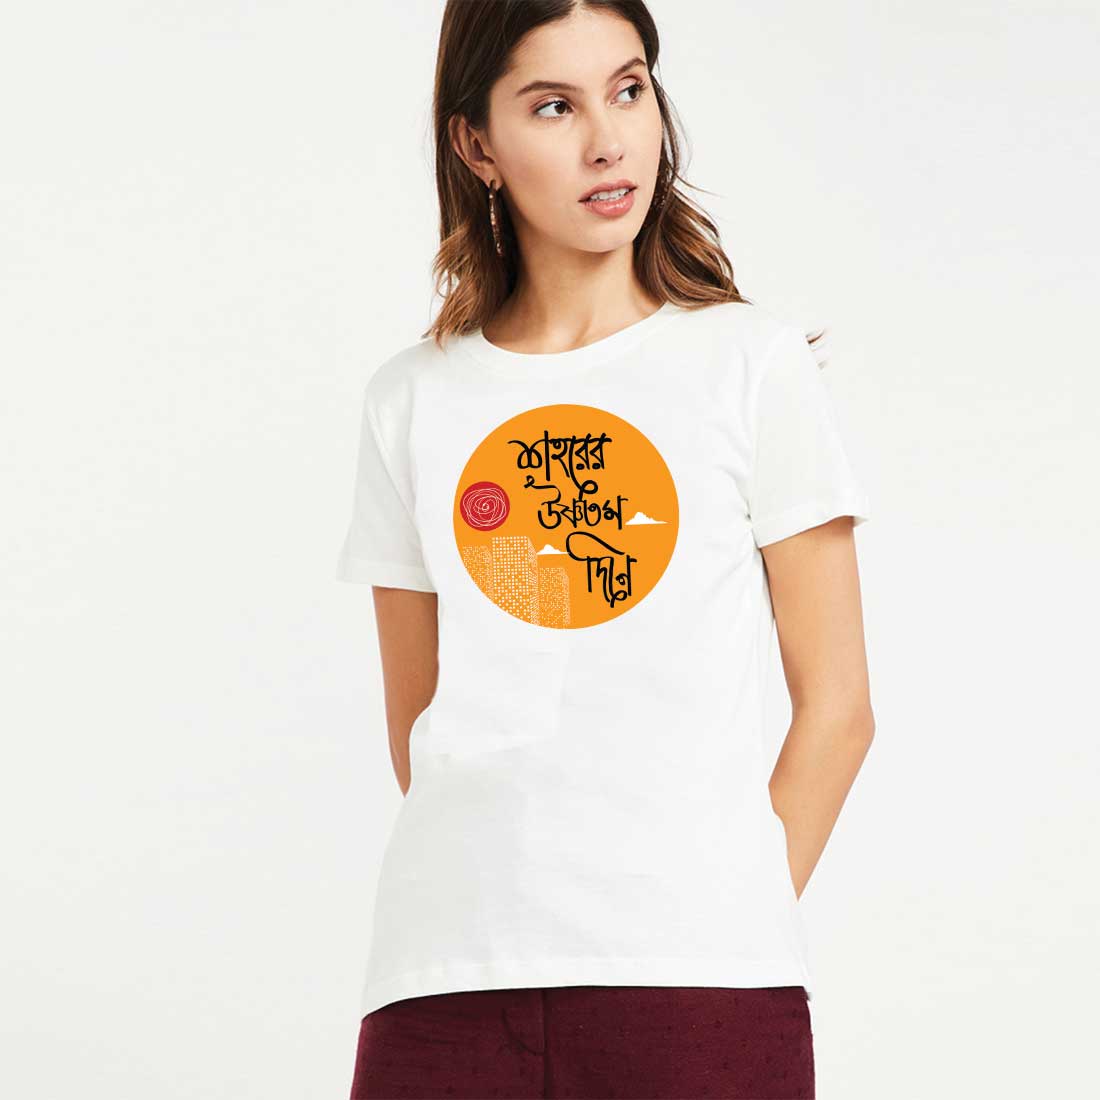 Shoreer Ushnotomo Din e White Women T Shirt